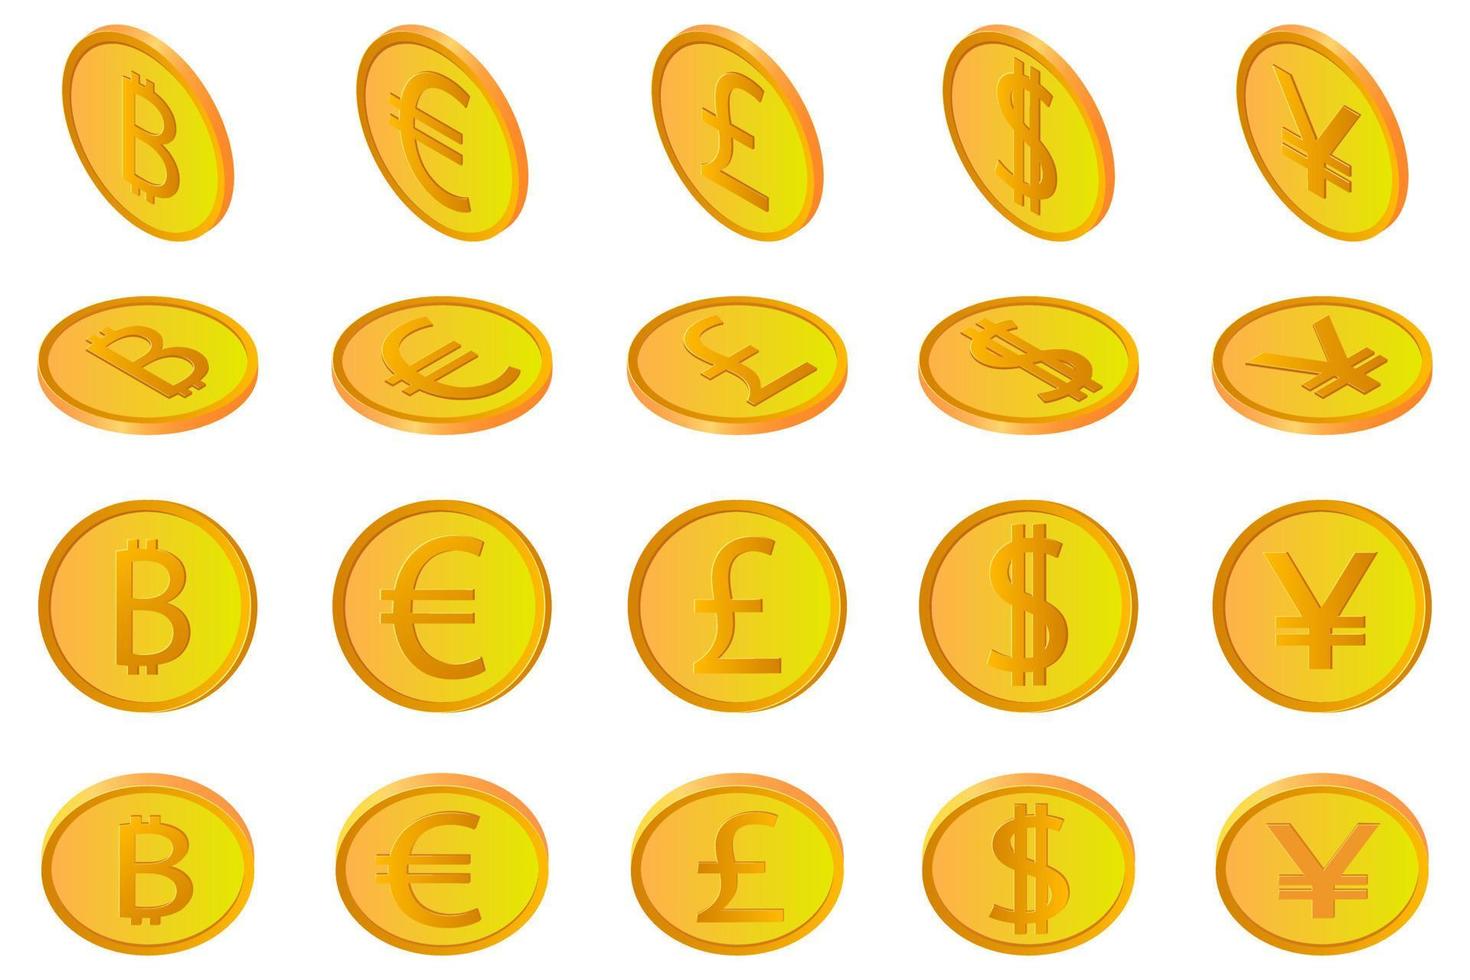 o bitcoin dólar euro libra e yen.a conjunto de moedas de criptomoedas europeias americanas de moedas britânicas e japonesas em diferentes ângulos isolados em um fundo branco. usar como elementos de design. vetor